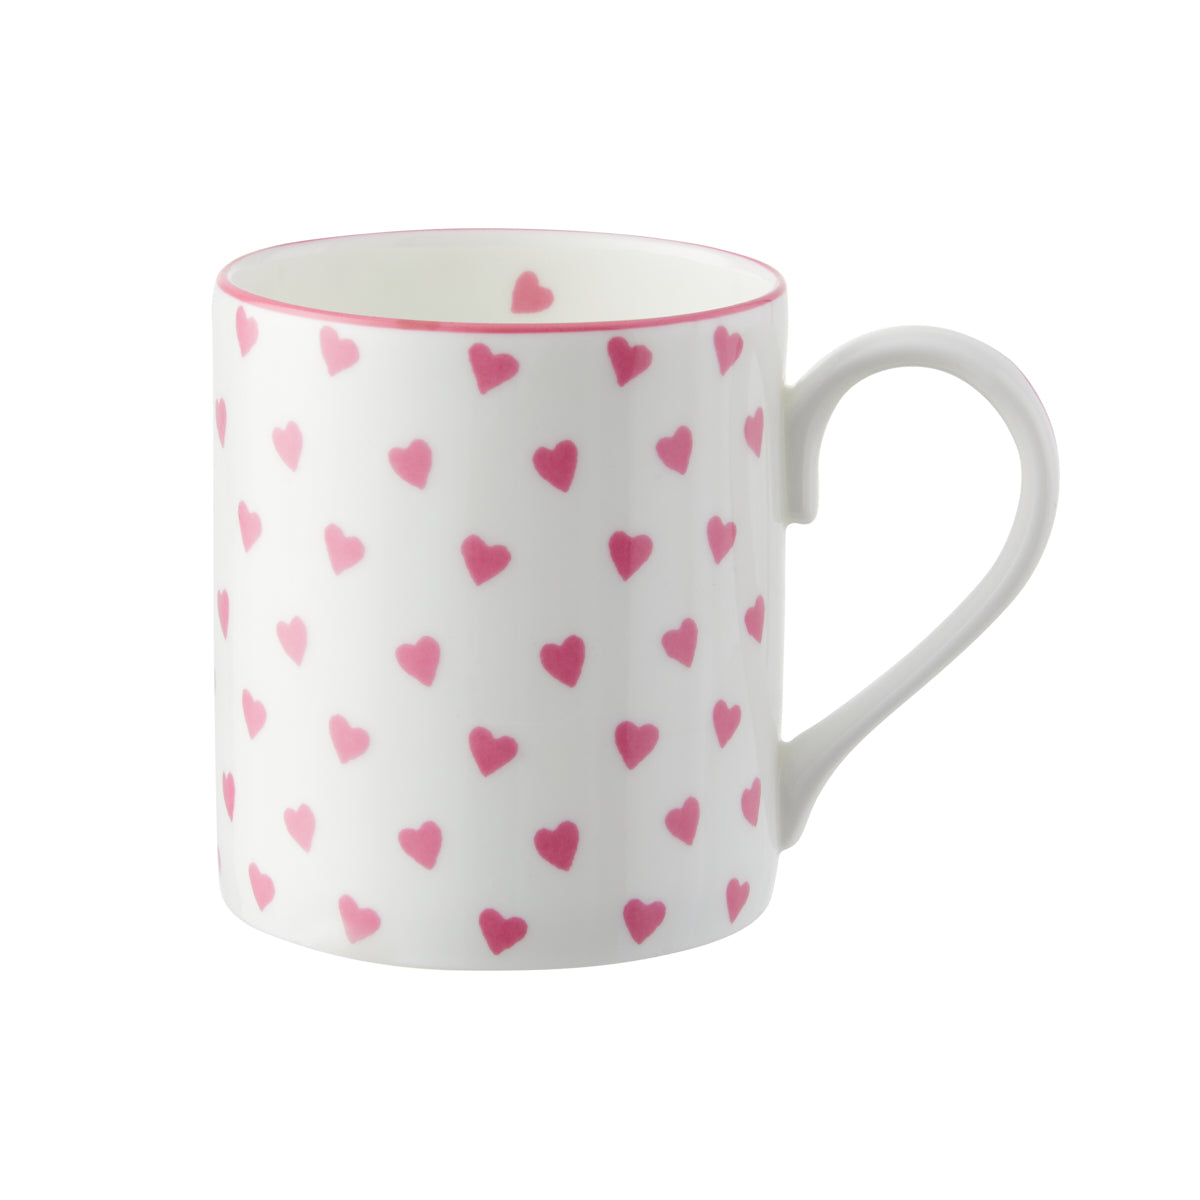 Nina Campbell Larch Mug - Pink Heart